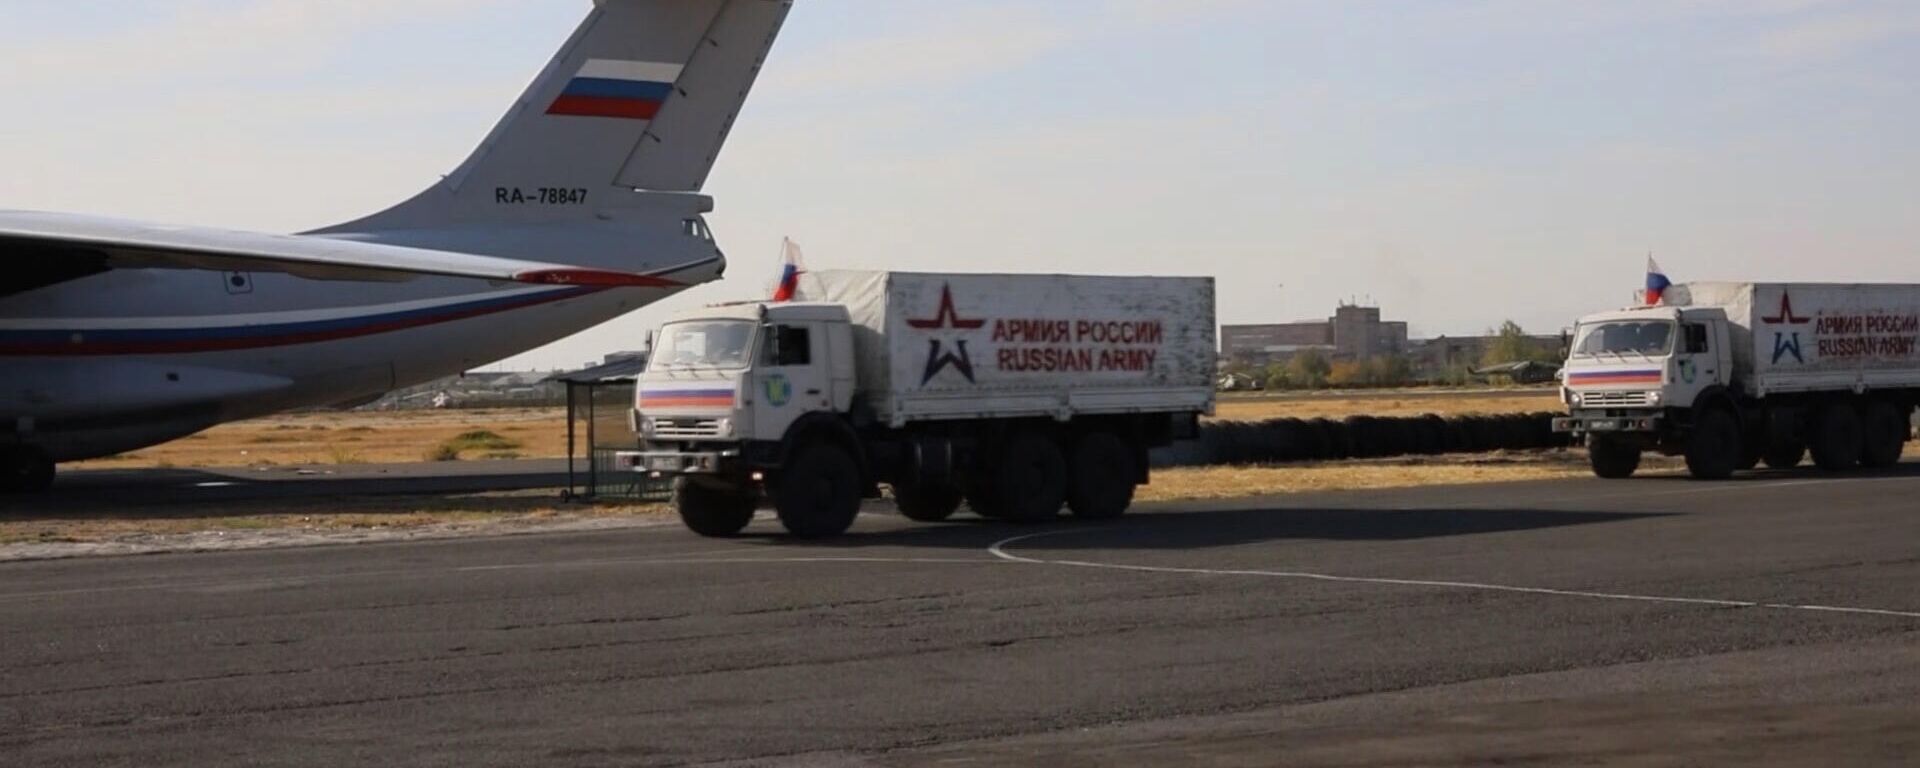 Российские миротворцы доставили в Нагорный Карабах 10 тонн гуманитарной помощи, собранной благотворительными организациями  - Sputnik Армения, 1920, 19.10.2021